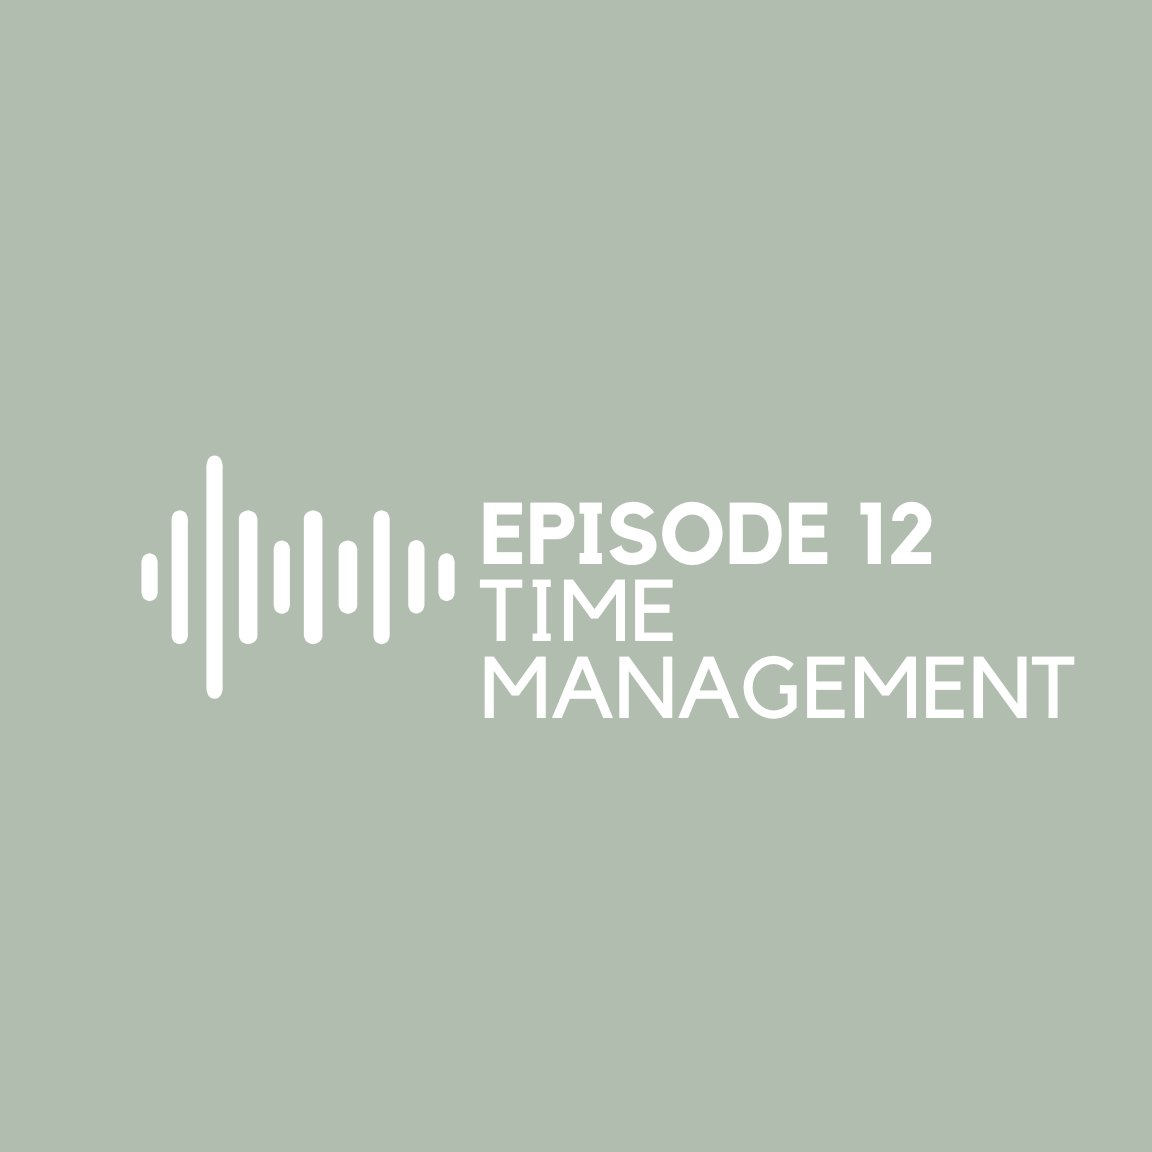 Episode 12 - Time Management